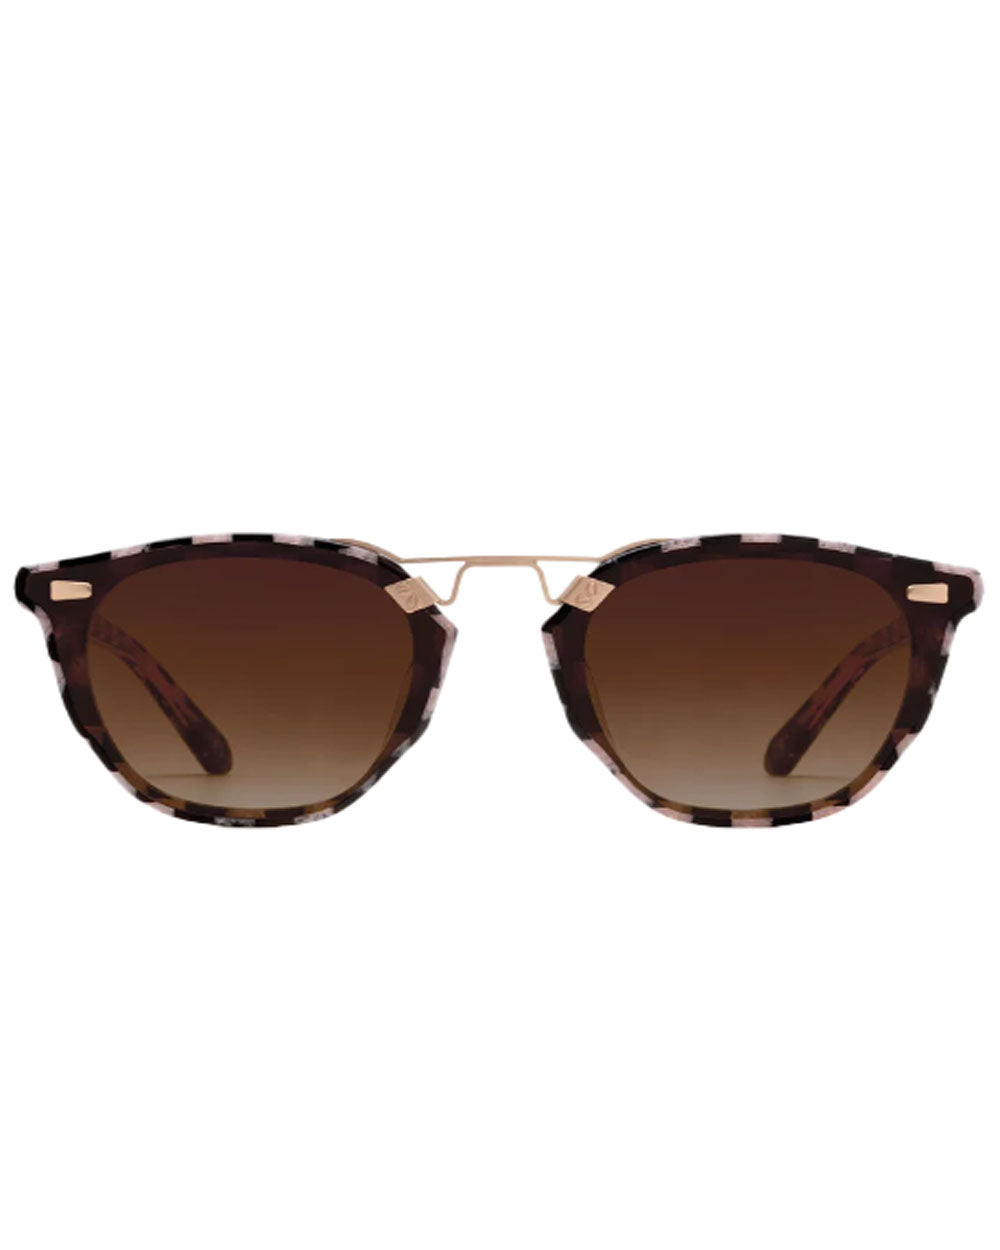 Beau Nylon Sunglasses in Harlequin 18K Rose